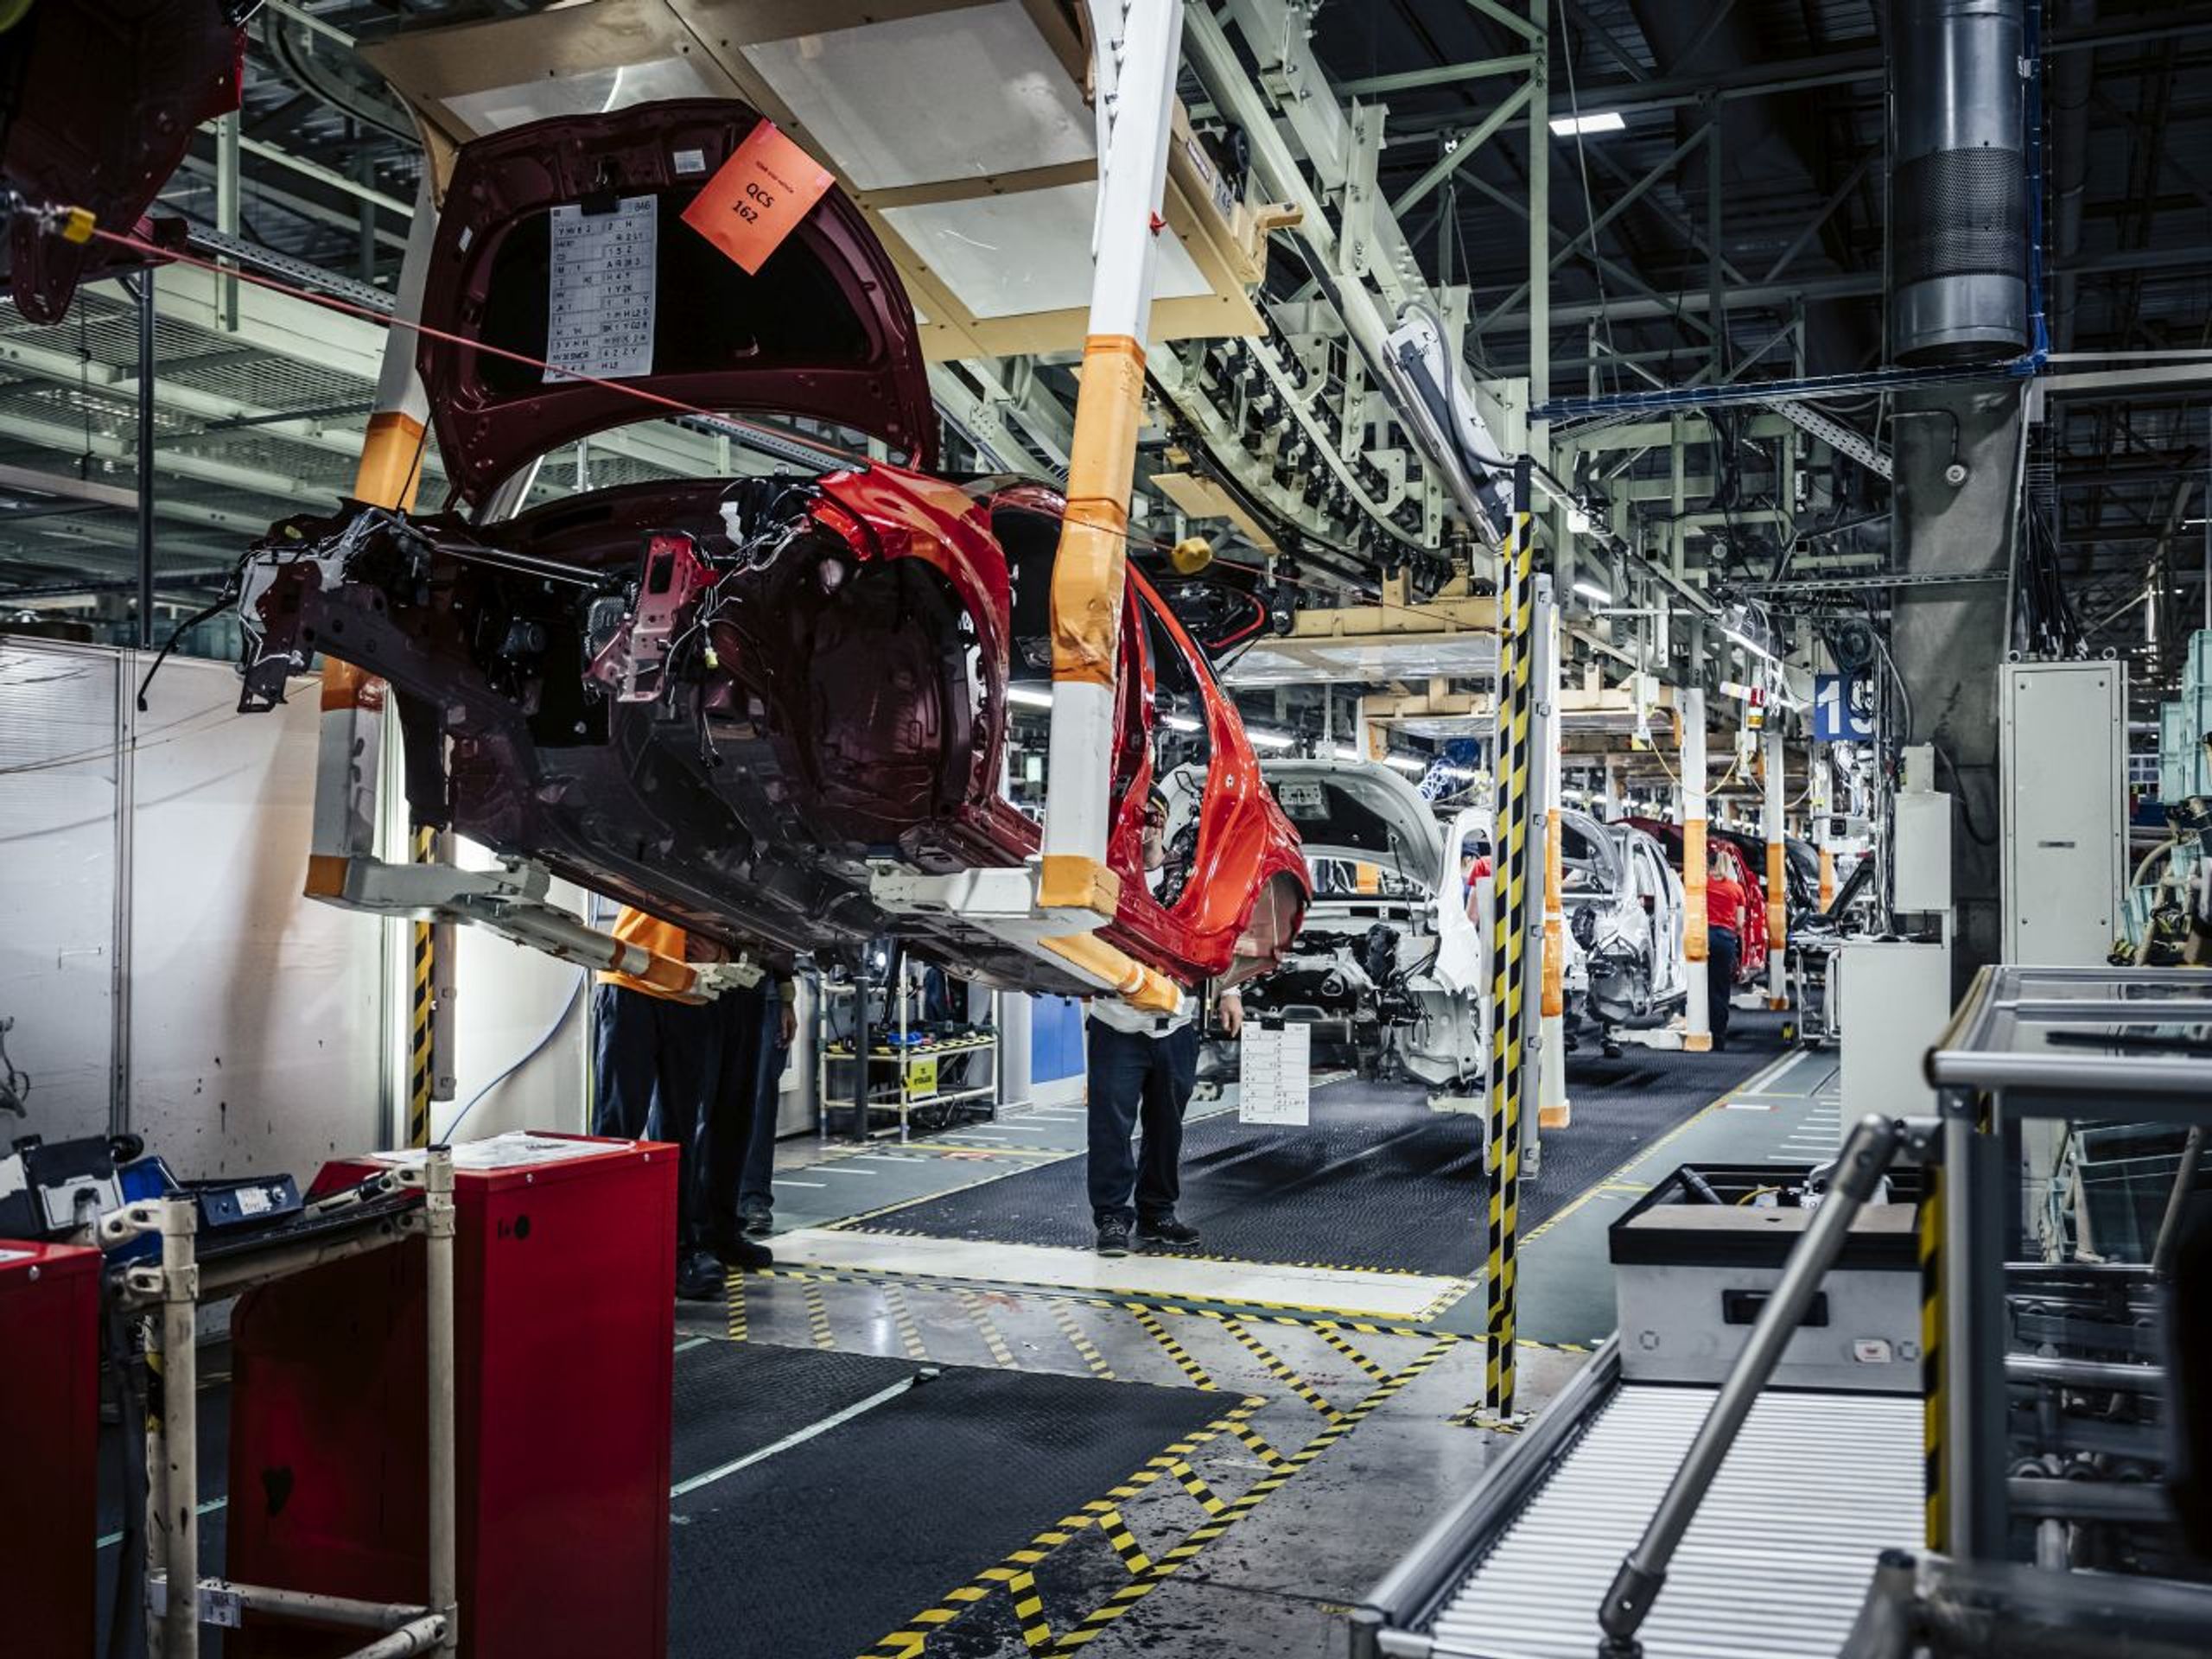 Výroba Toyoty Yaris ve středočeském Kolíně - Podívejte se na výrobní linky Toyoty v Kolíně (4/18)